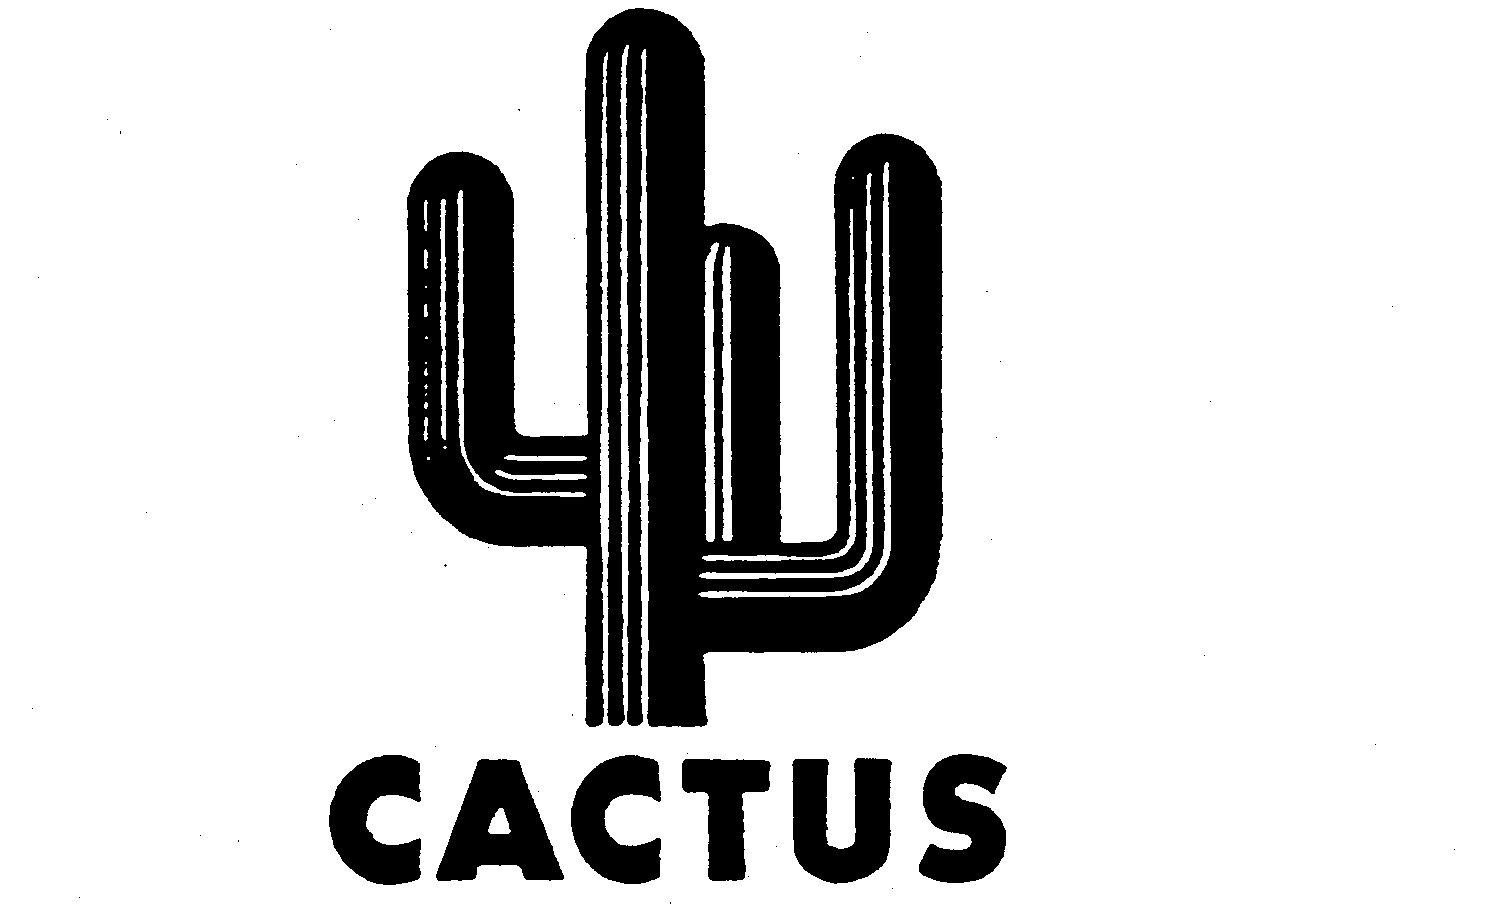  CACTUS